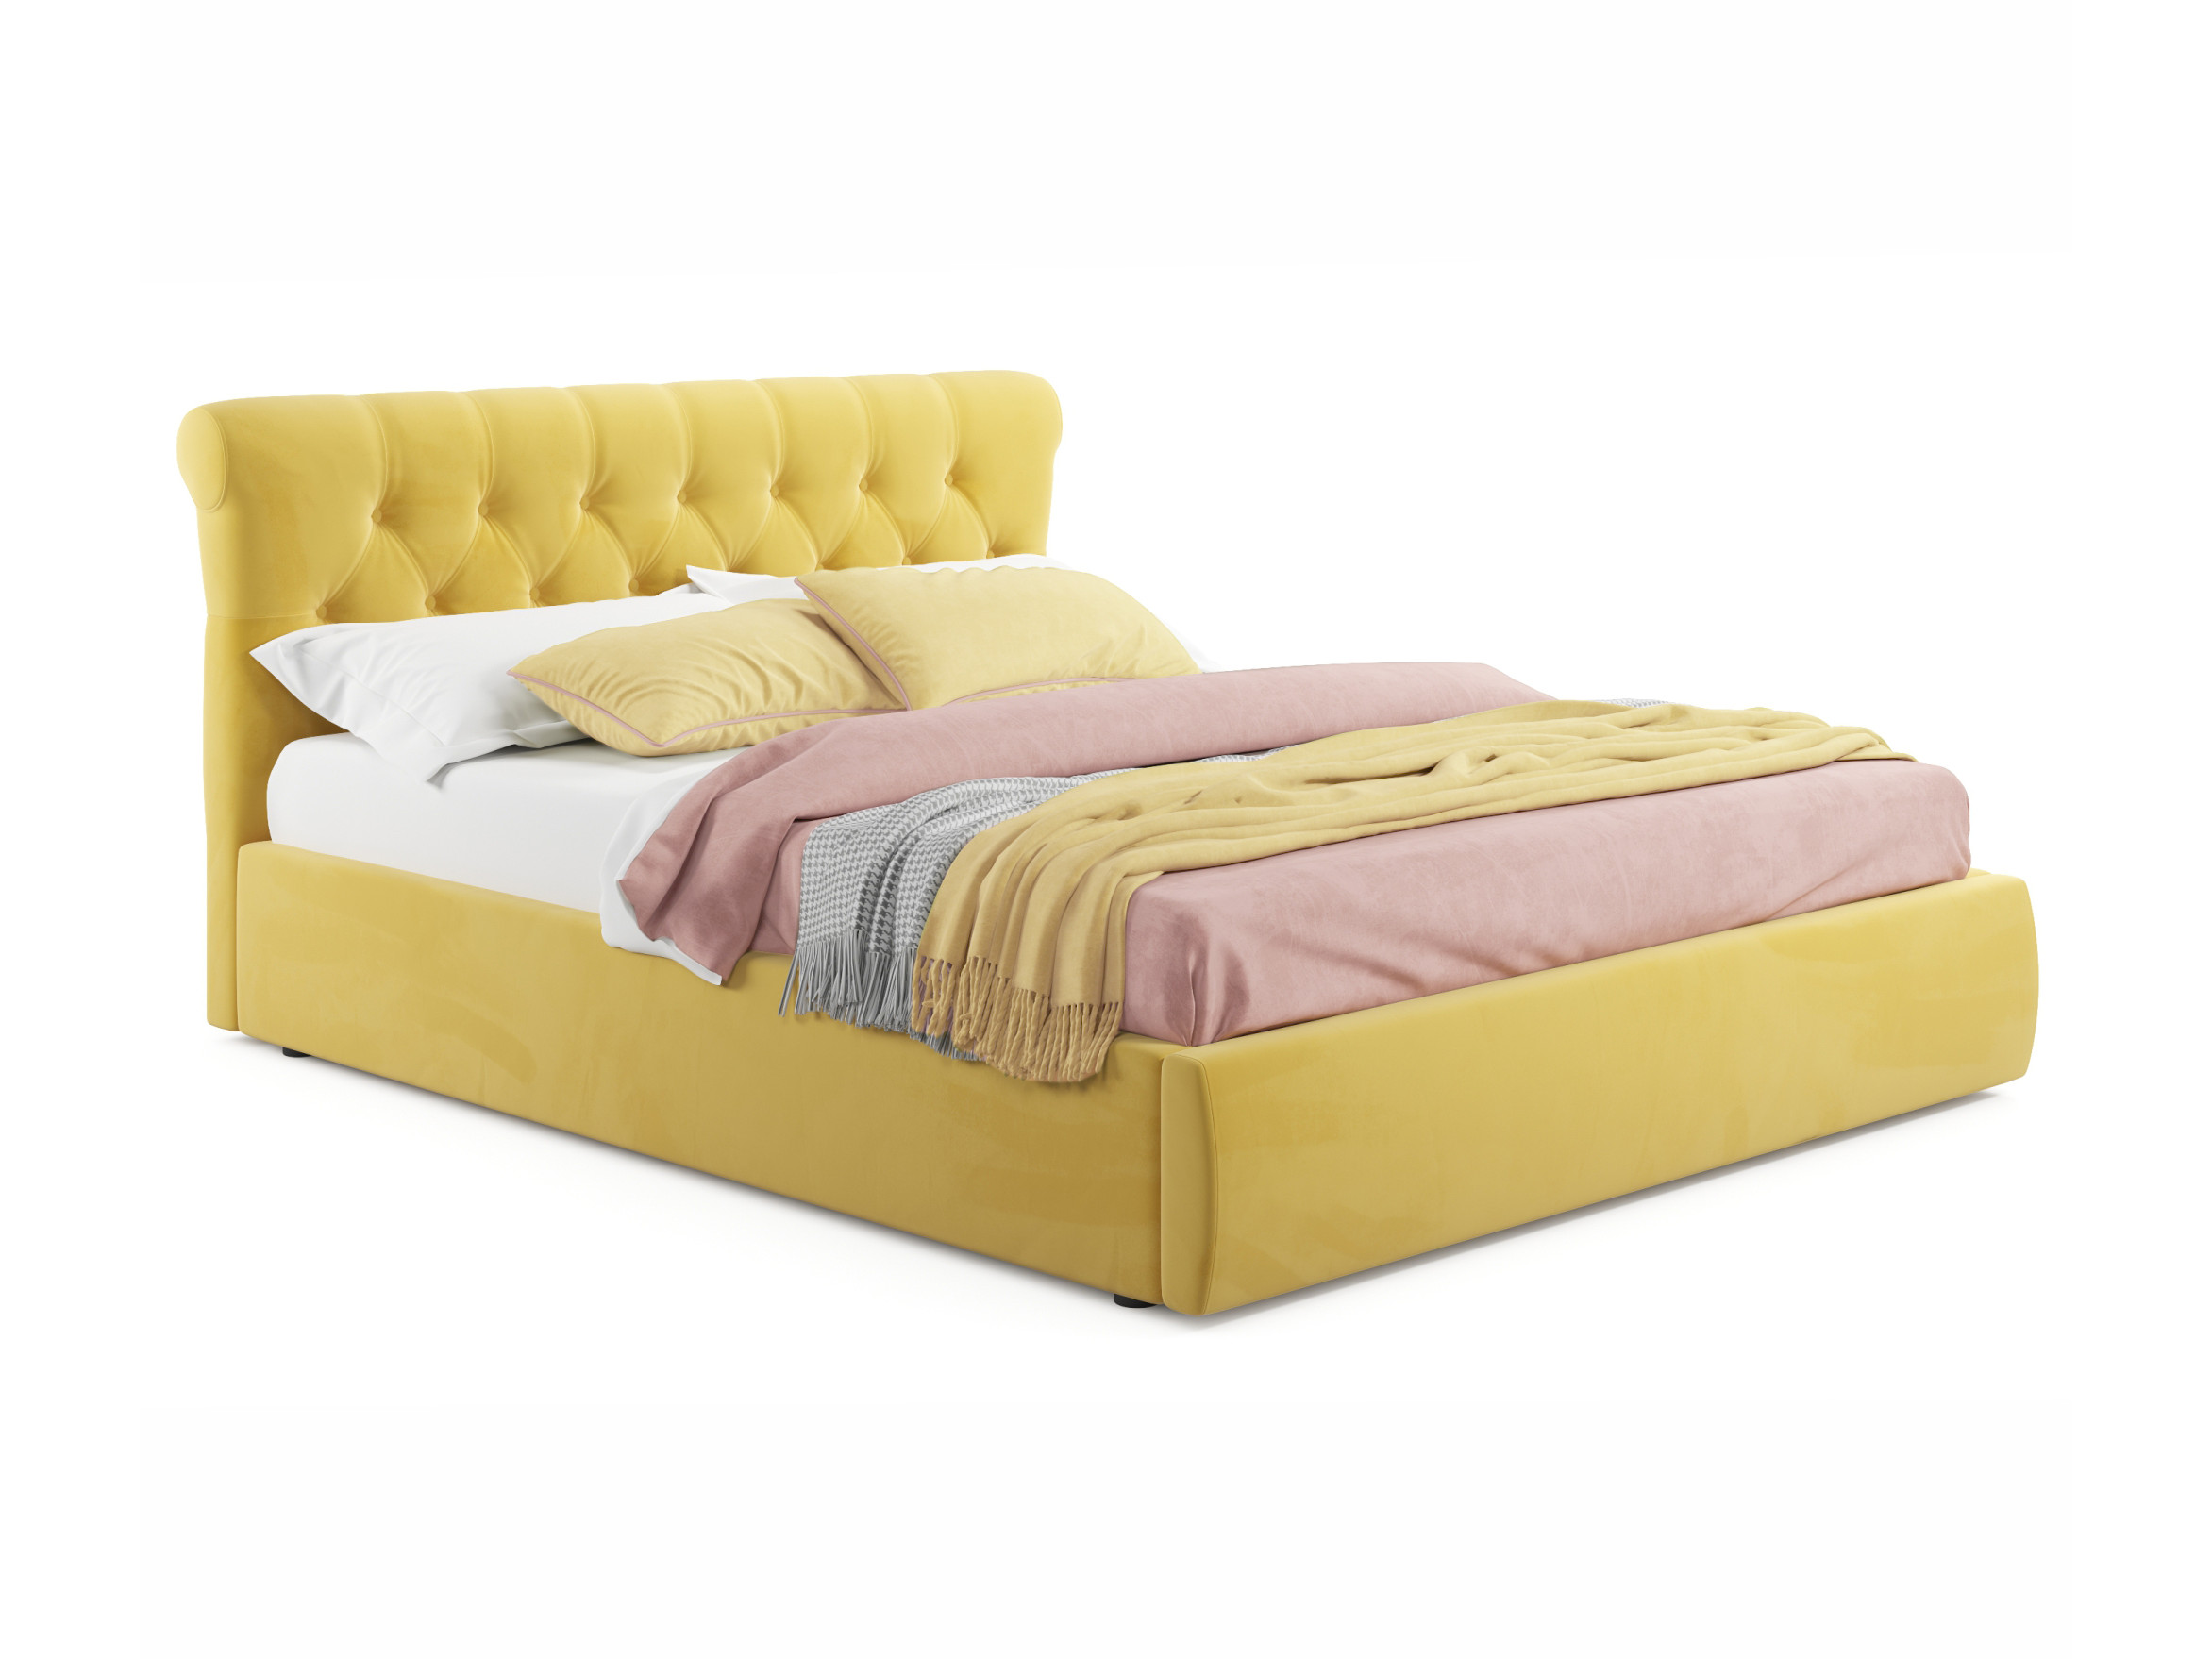 Мягкая кровать Ameli 1600 желтая с подъемным механизмом желтый, Желтый, Велюр, ДСП мягкая кровать с тумбами ameli 1600 желтая с подъемным механизмом желтый желтый велюр дсп